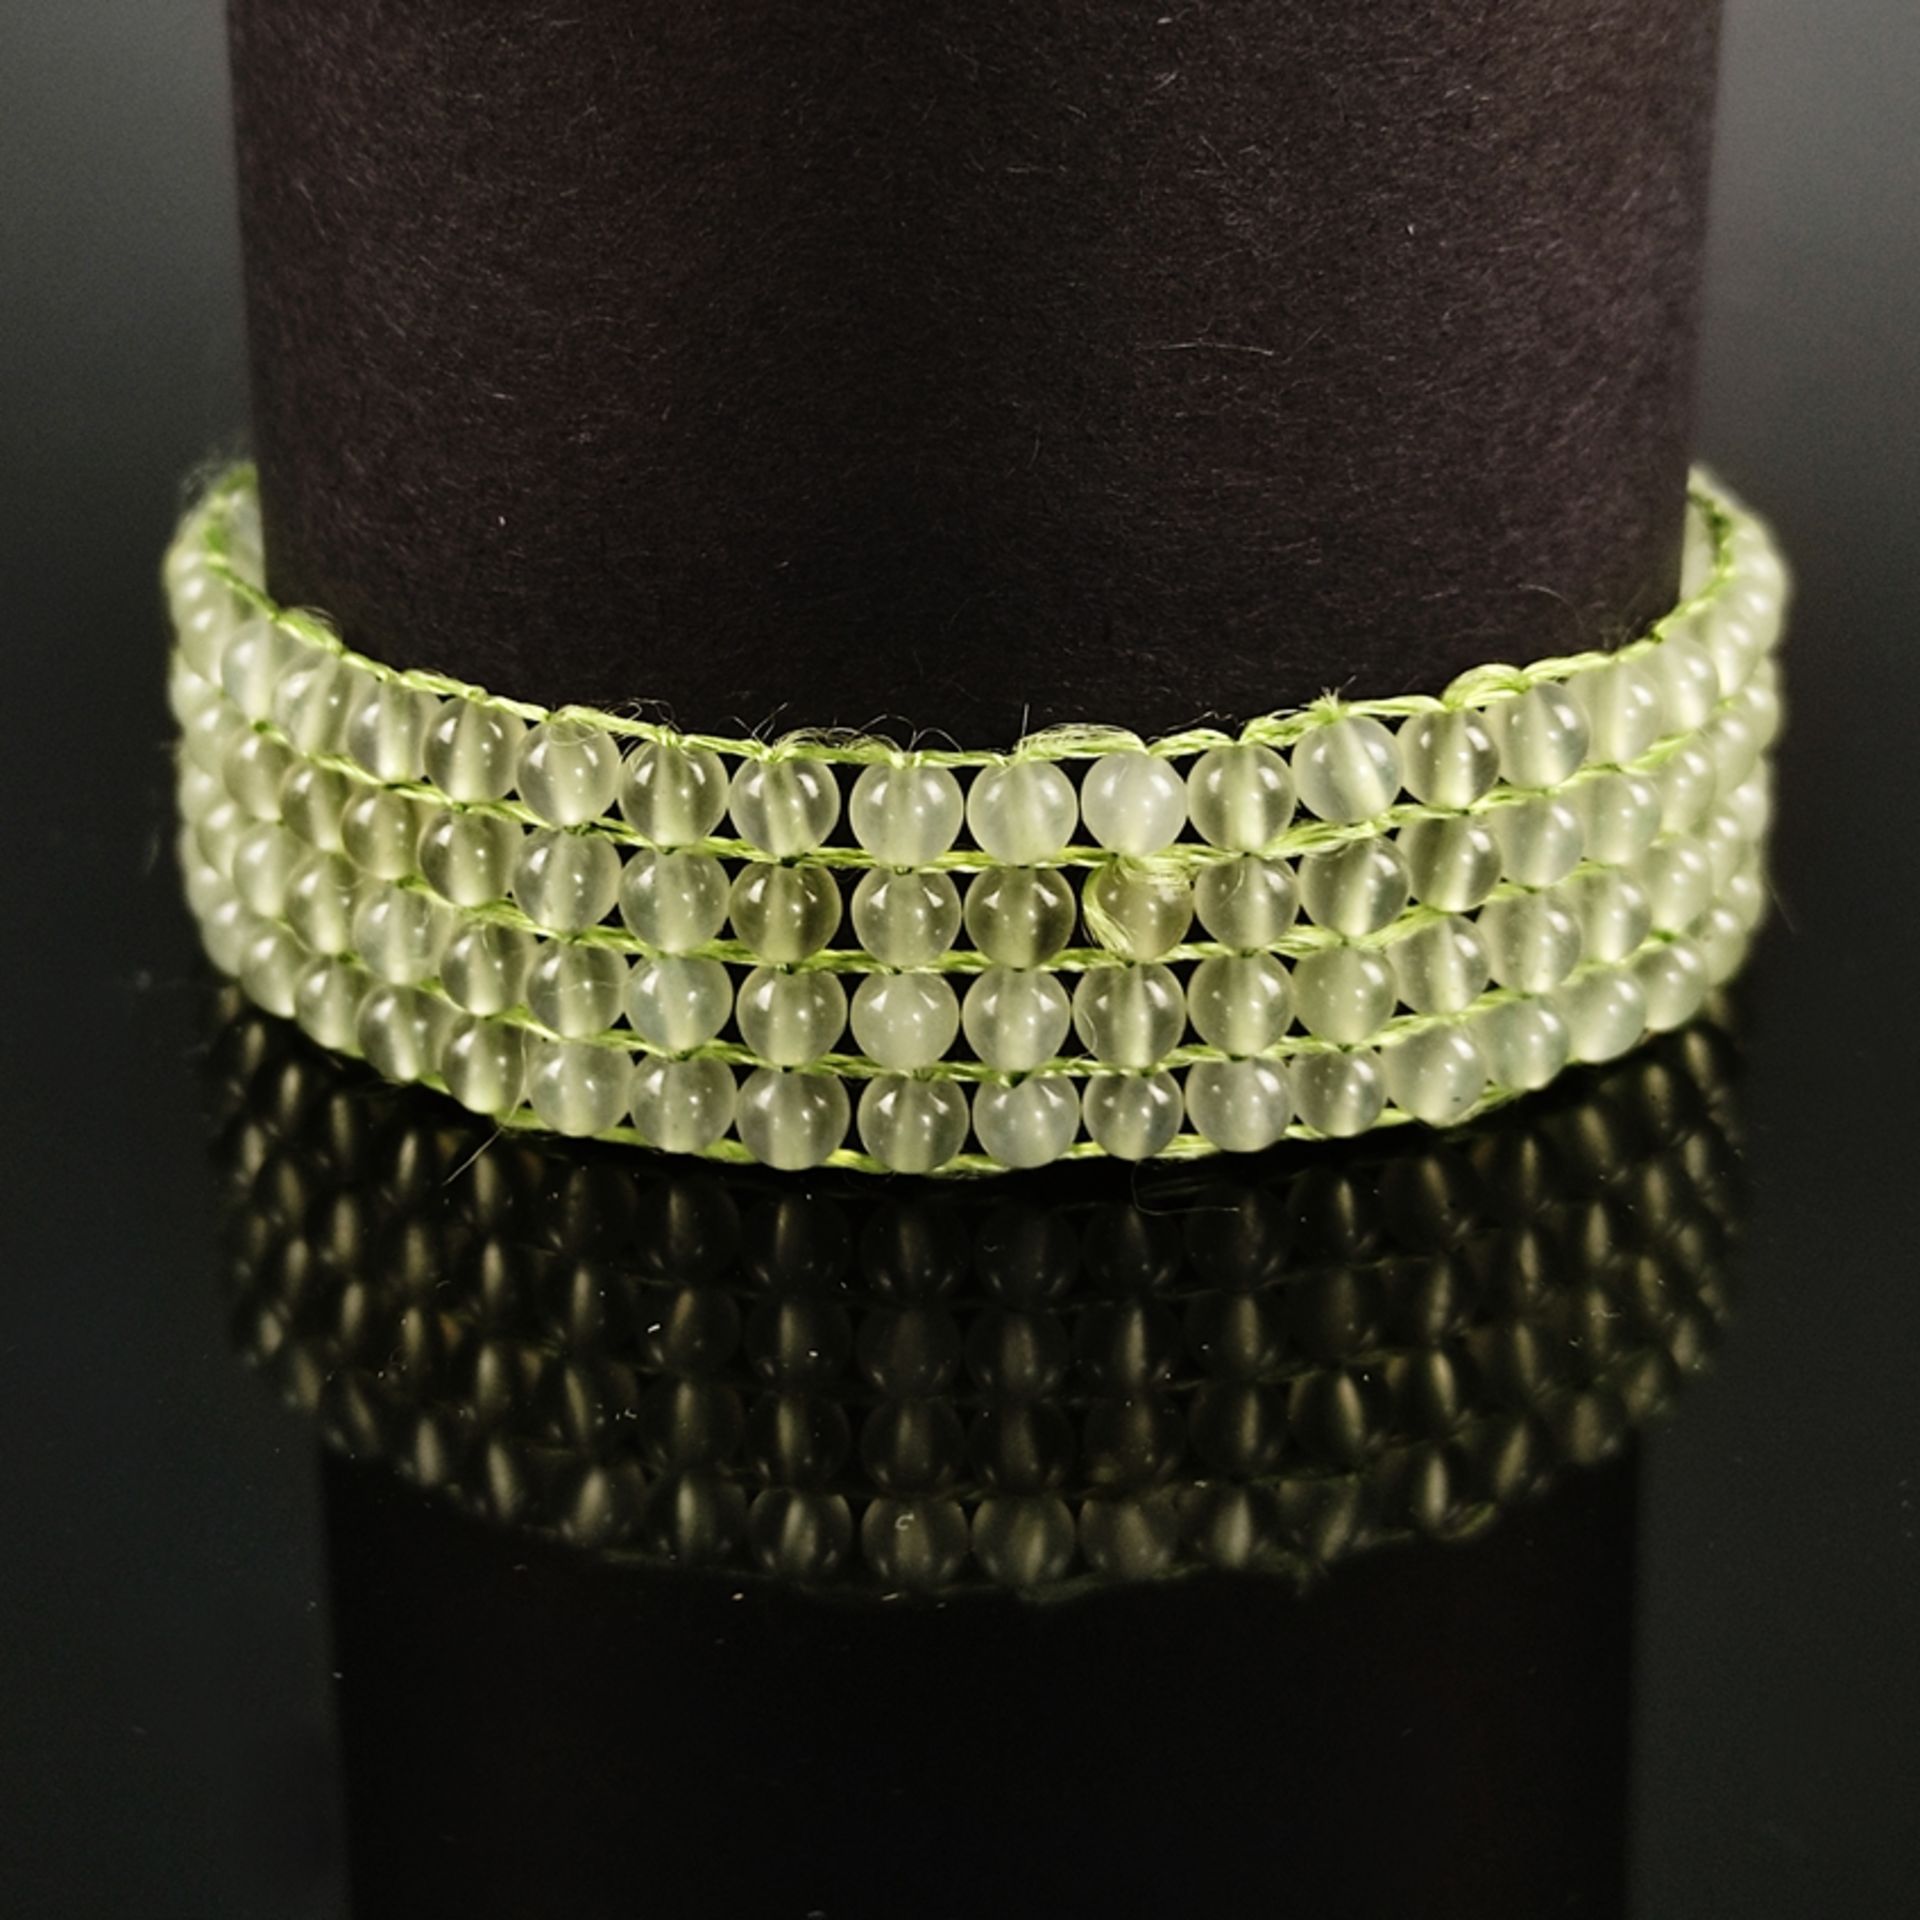 Jade-Armband, 4-reihig, Silber 925, Gesamtgewicht 18,4g, Geflecht-Armband aus hellgrüner, durchsche - Bild 2 aus 4